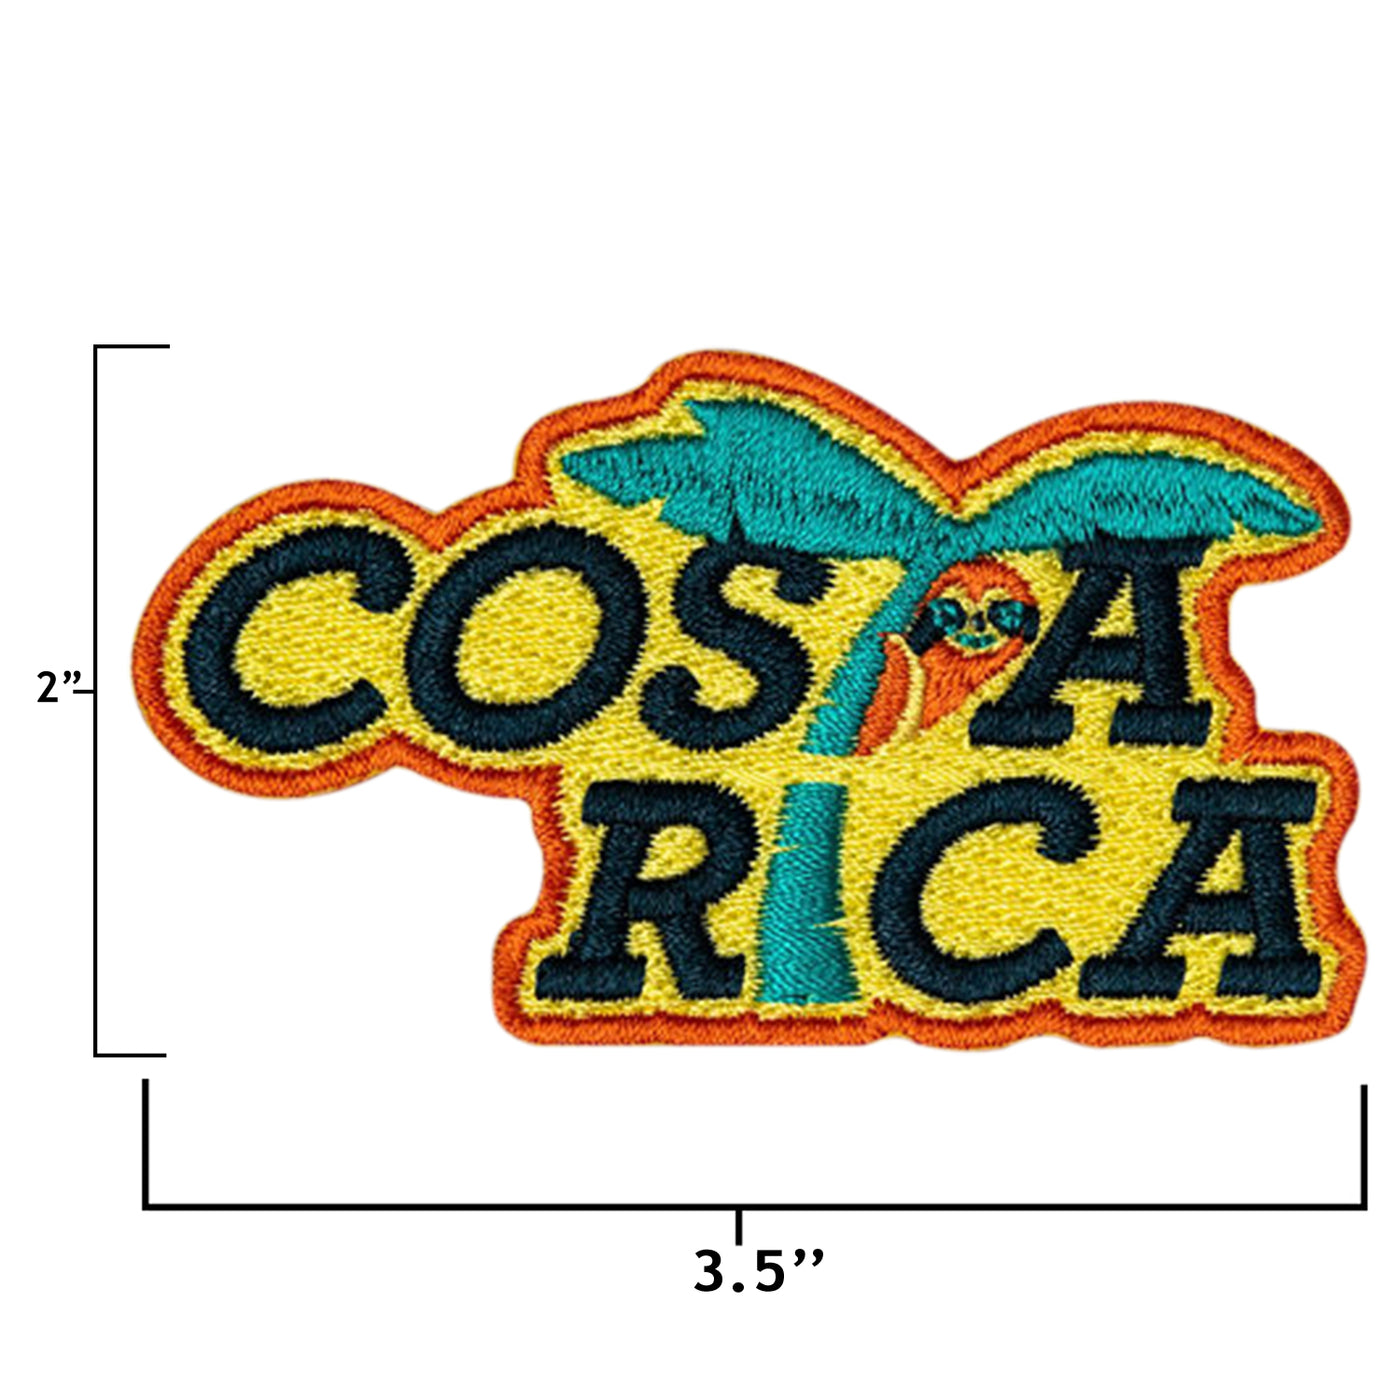 Costa Rica Hook Patch